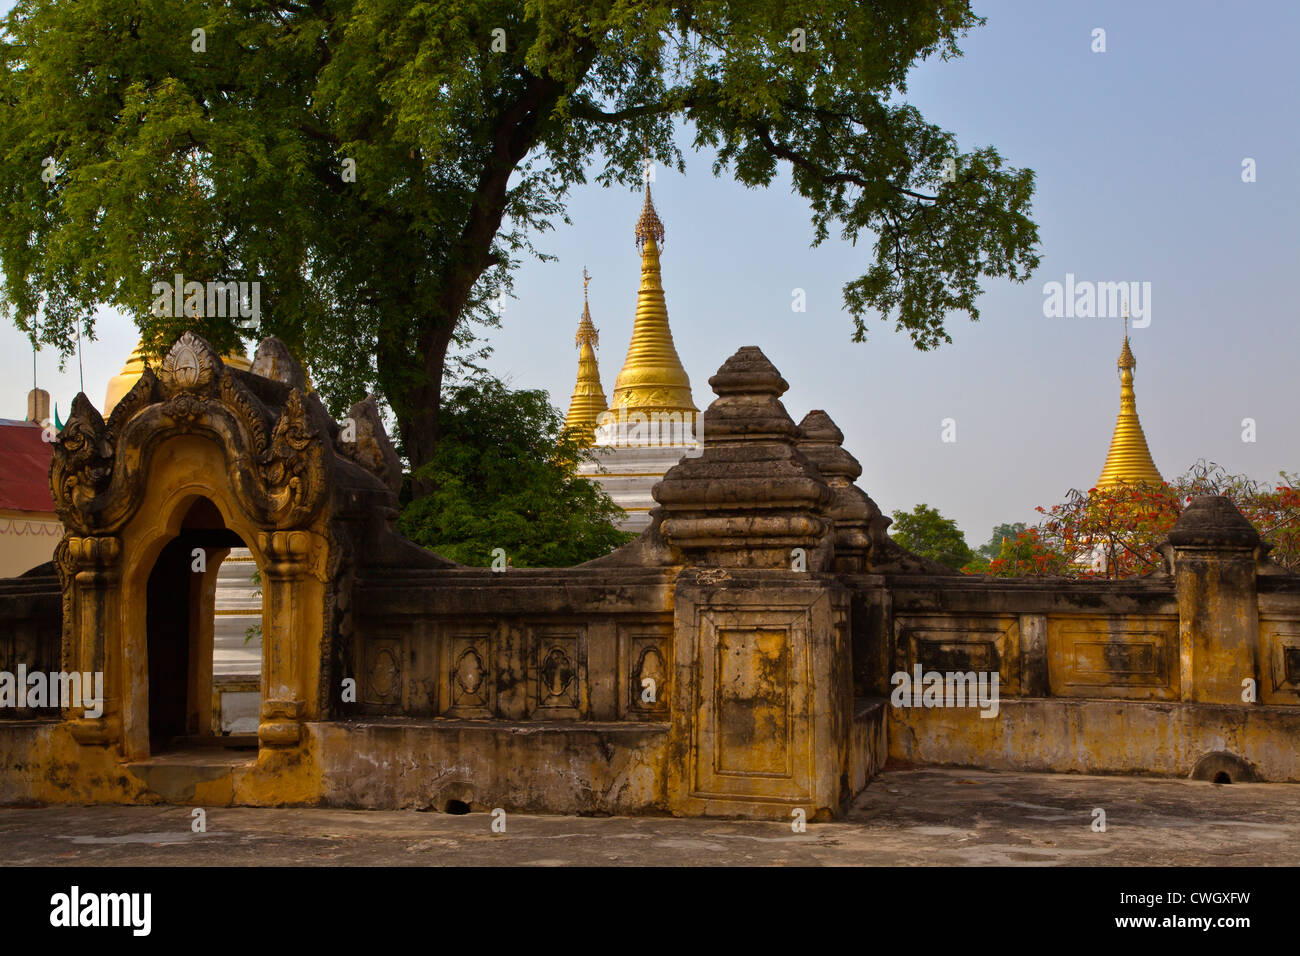 HTILAINGSHIN PAYAin INWA historique dates pour la période de Bagan - Myanmar Banque D'Images